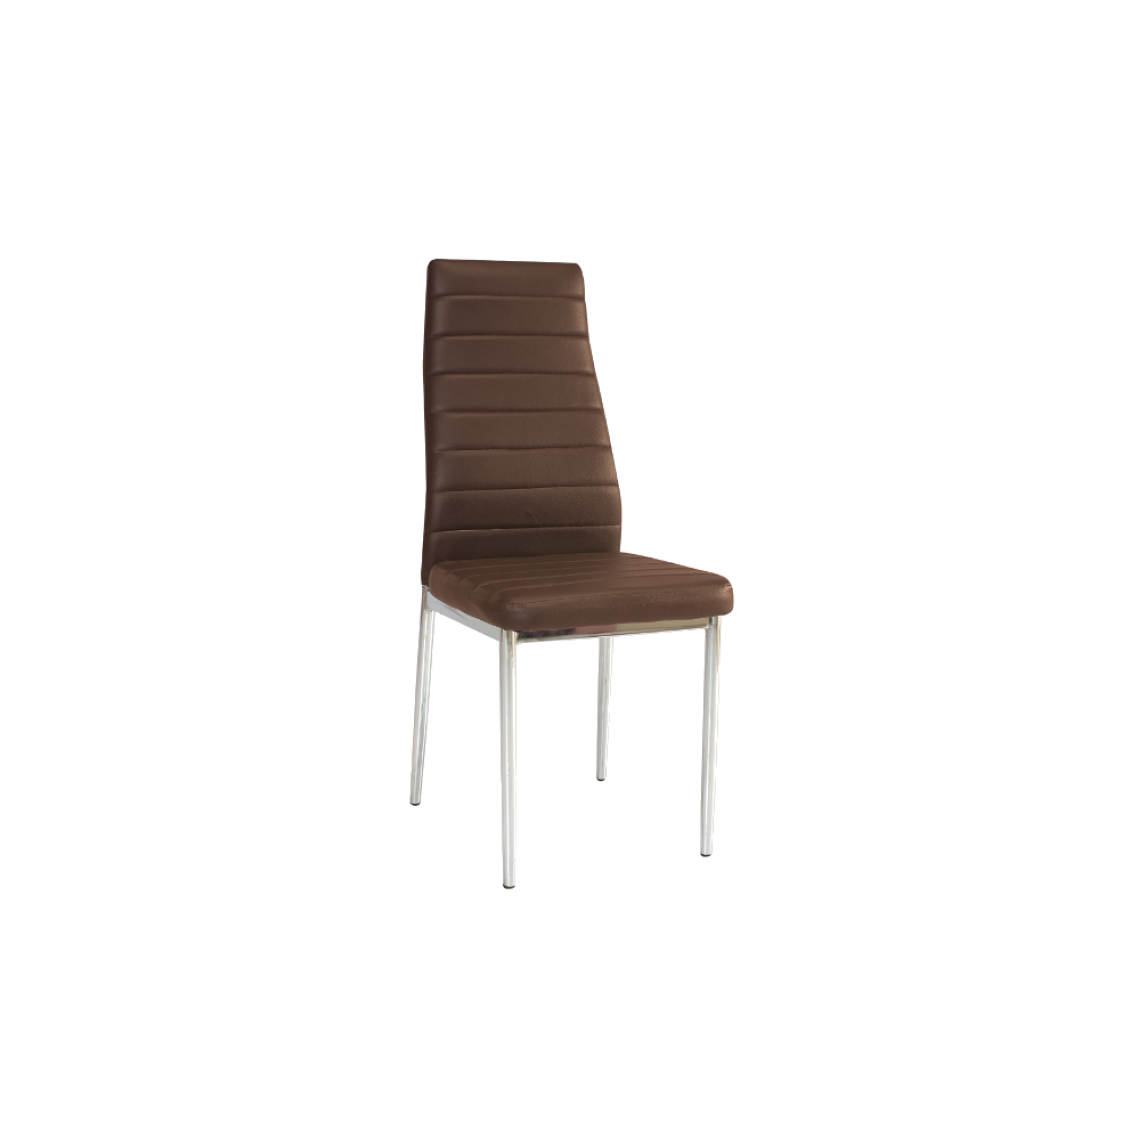 Ac-Deco - Chaise moderne - H261 - 40 x 38 x 96 cm - Cadre chromé - Marron - Chaises